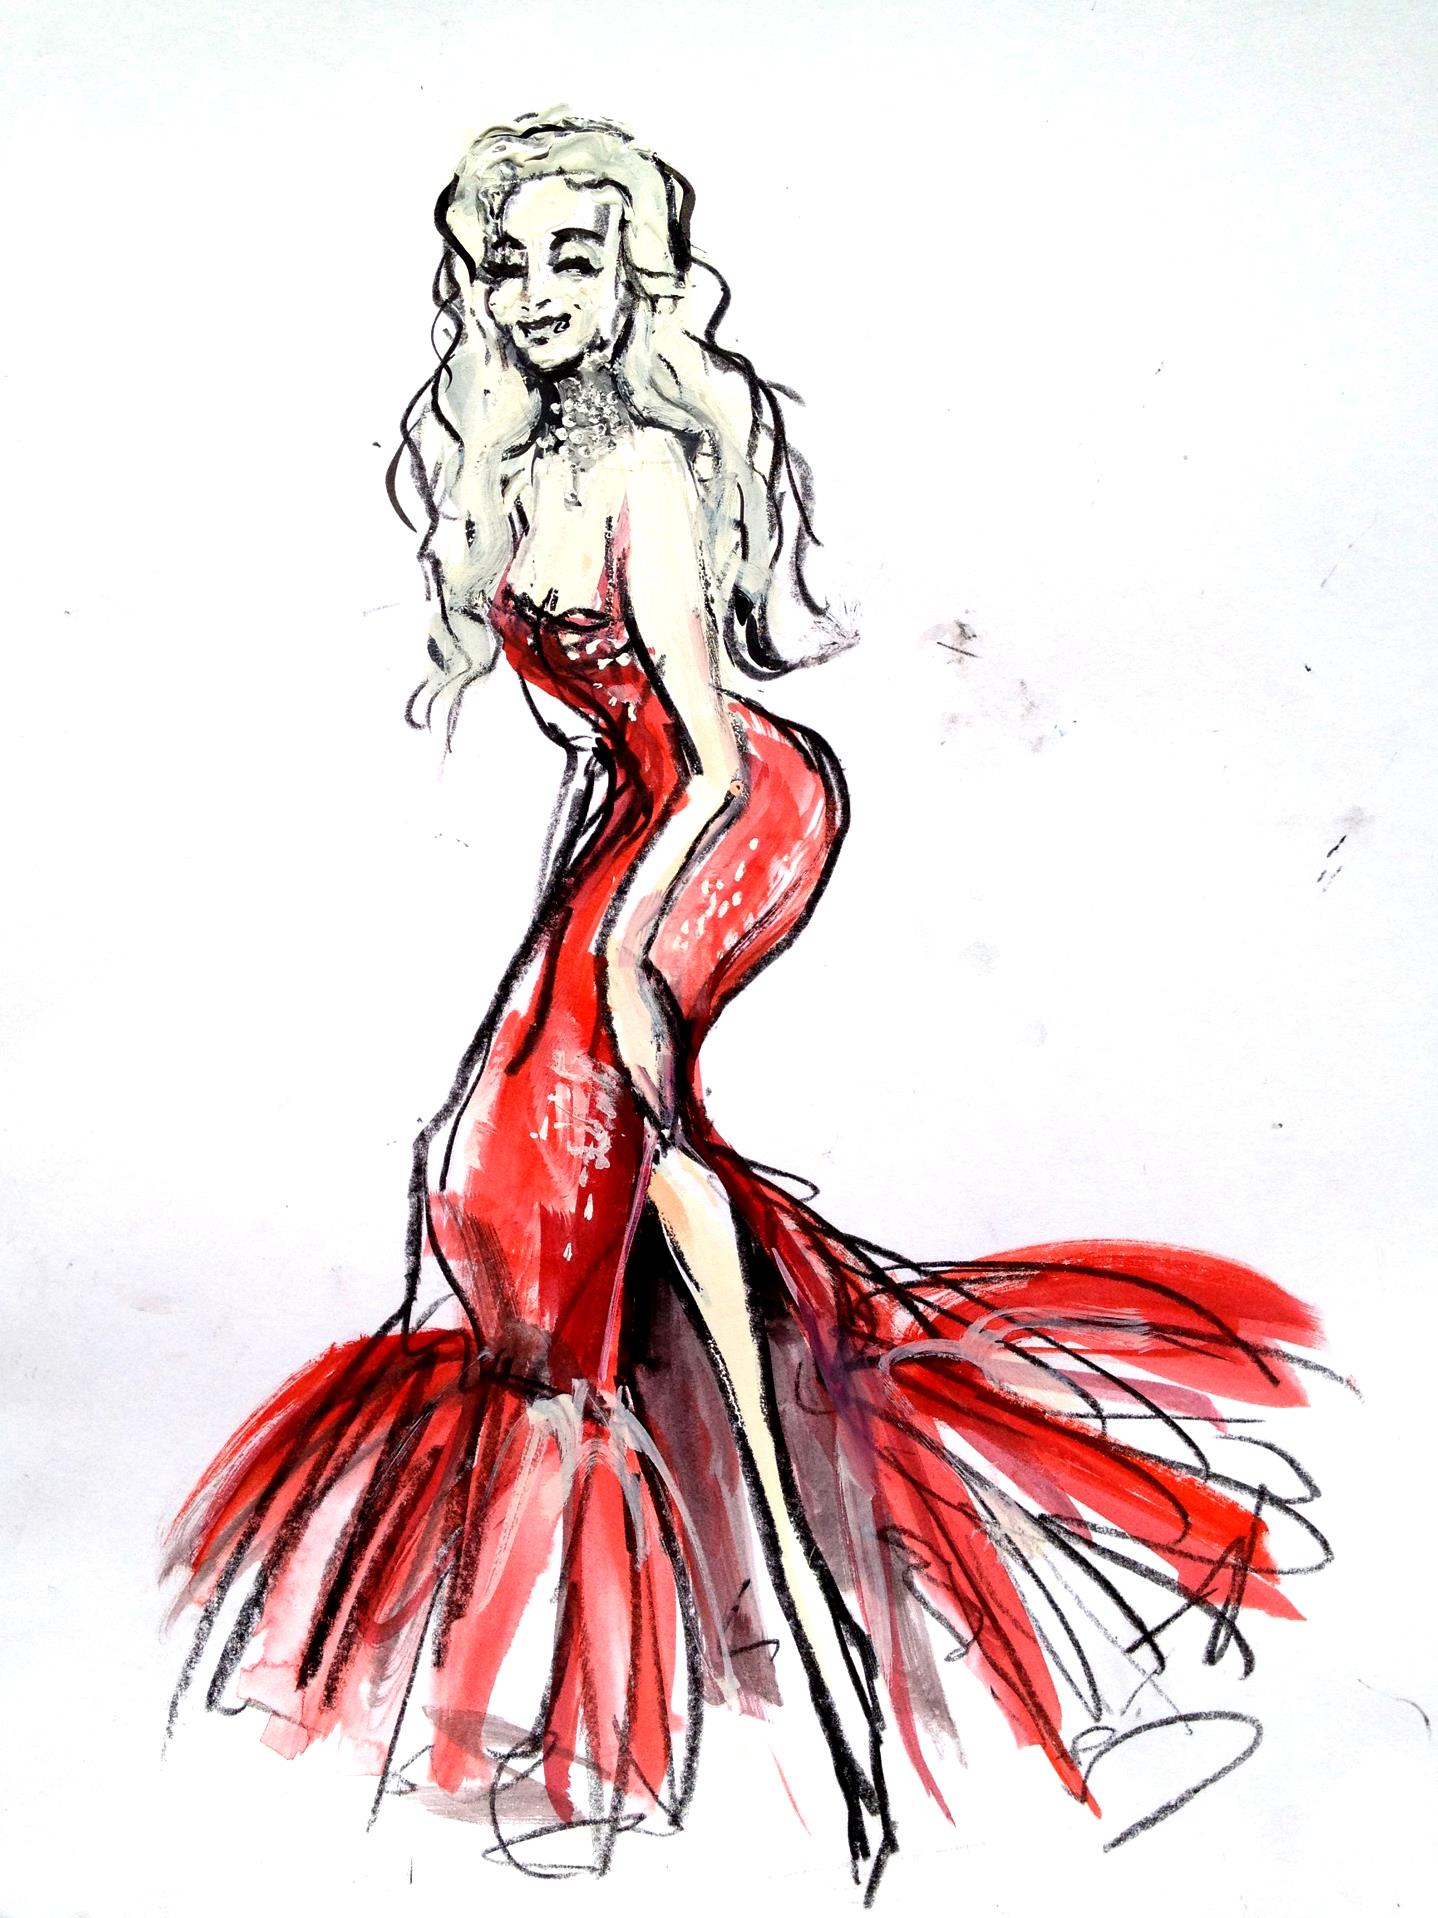 Ilustração de Dee Milo por Luma Rouge, intitulada "The Venus of Dance". 